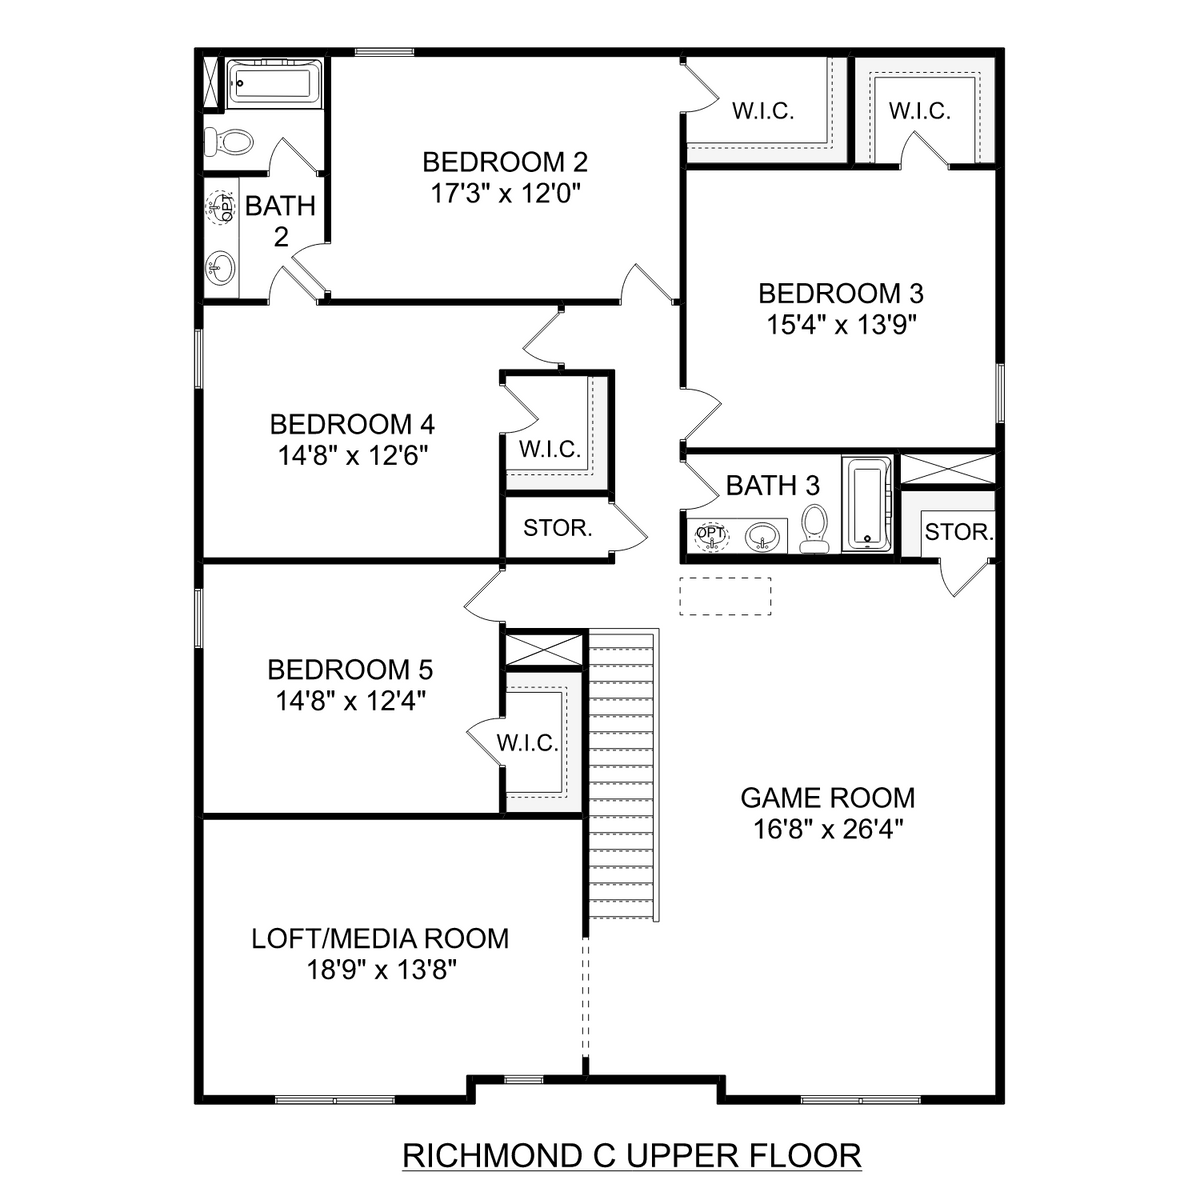 2 - The Richmond C floor plan layout for 27404 Mckenna Drive in Davidson Homes' Mallard Landing community.